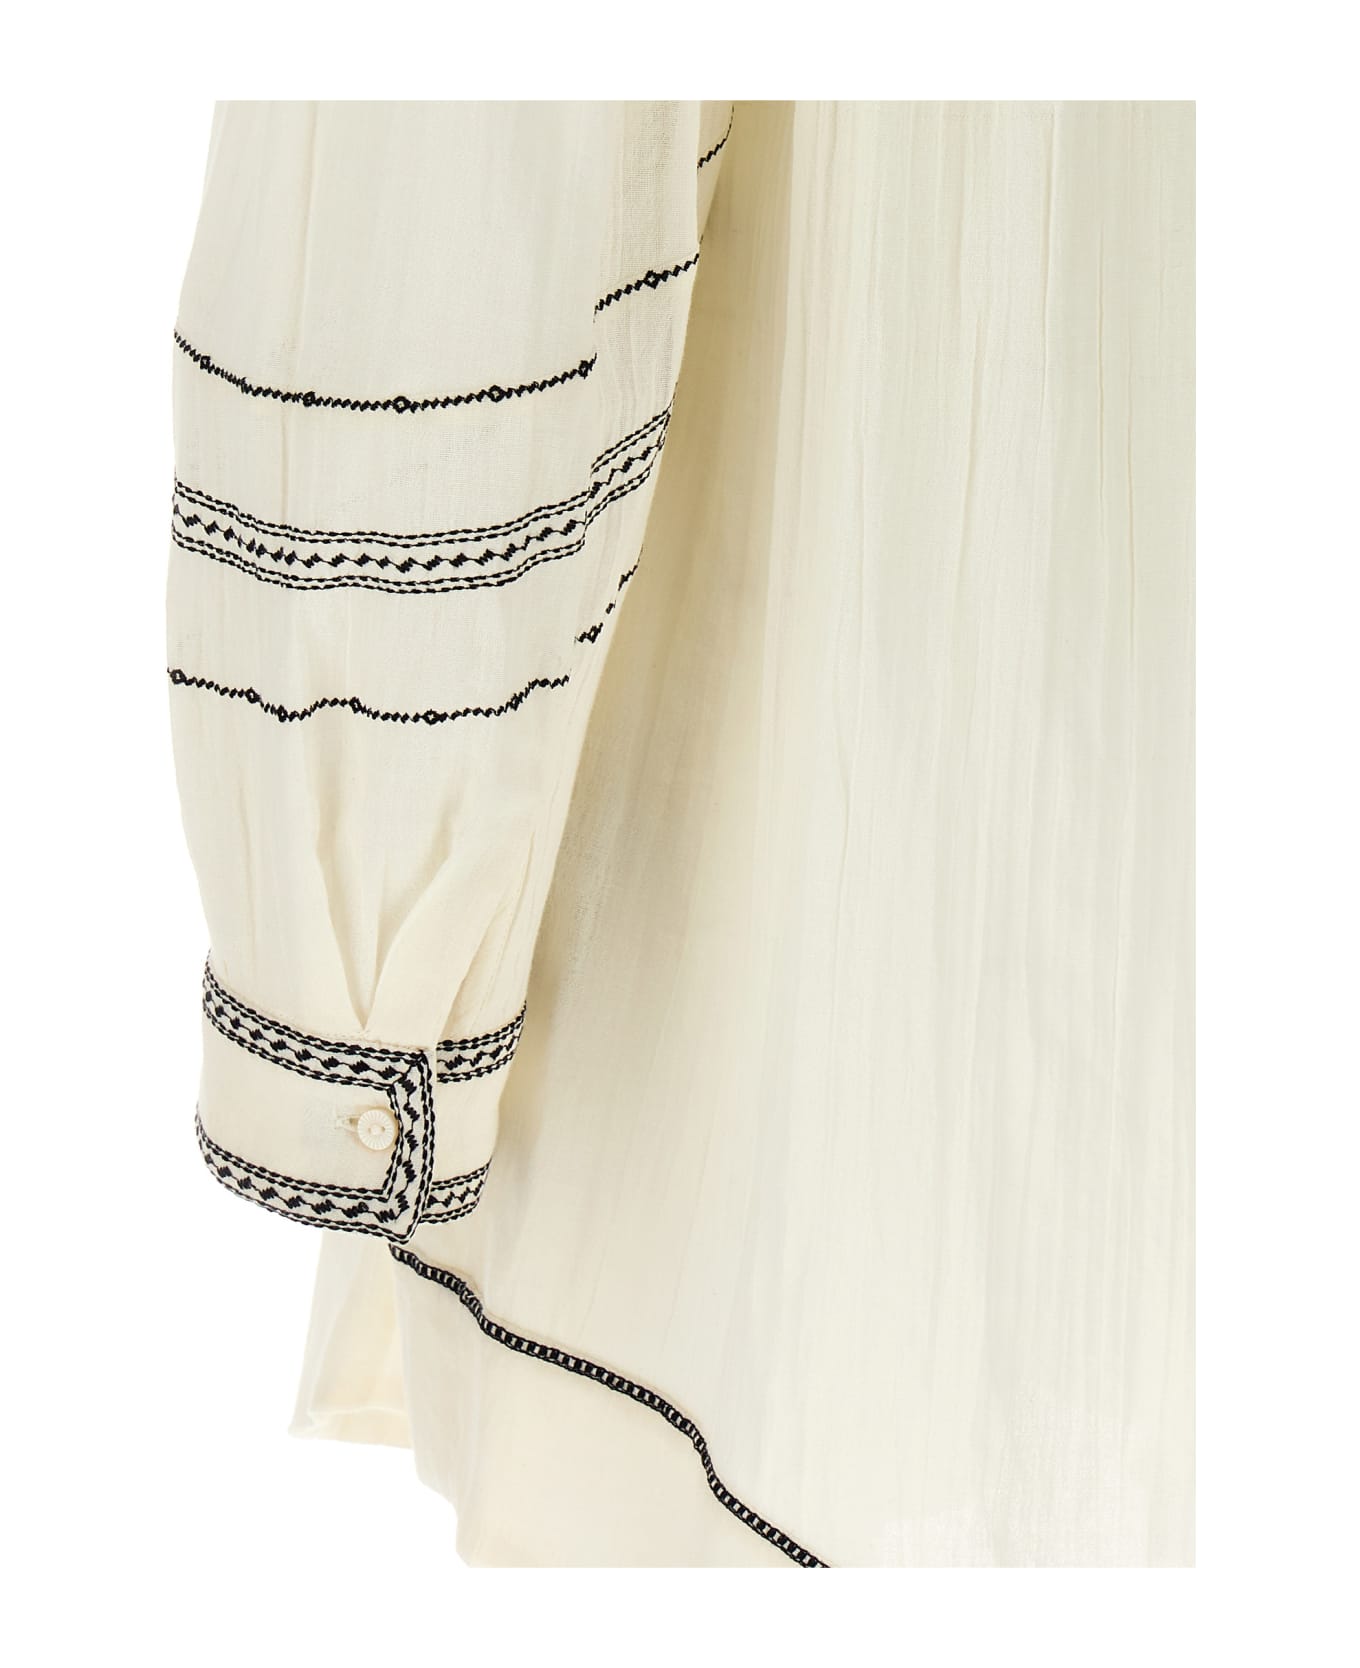 Marant Étoile 'pradel' Dress - White/Black